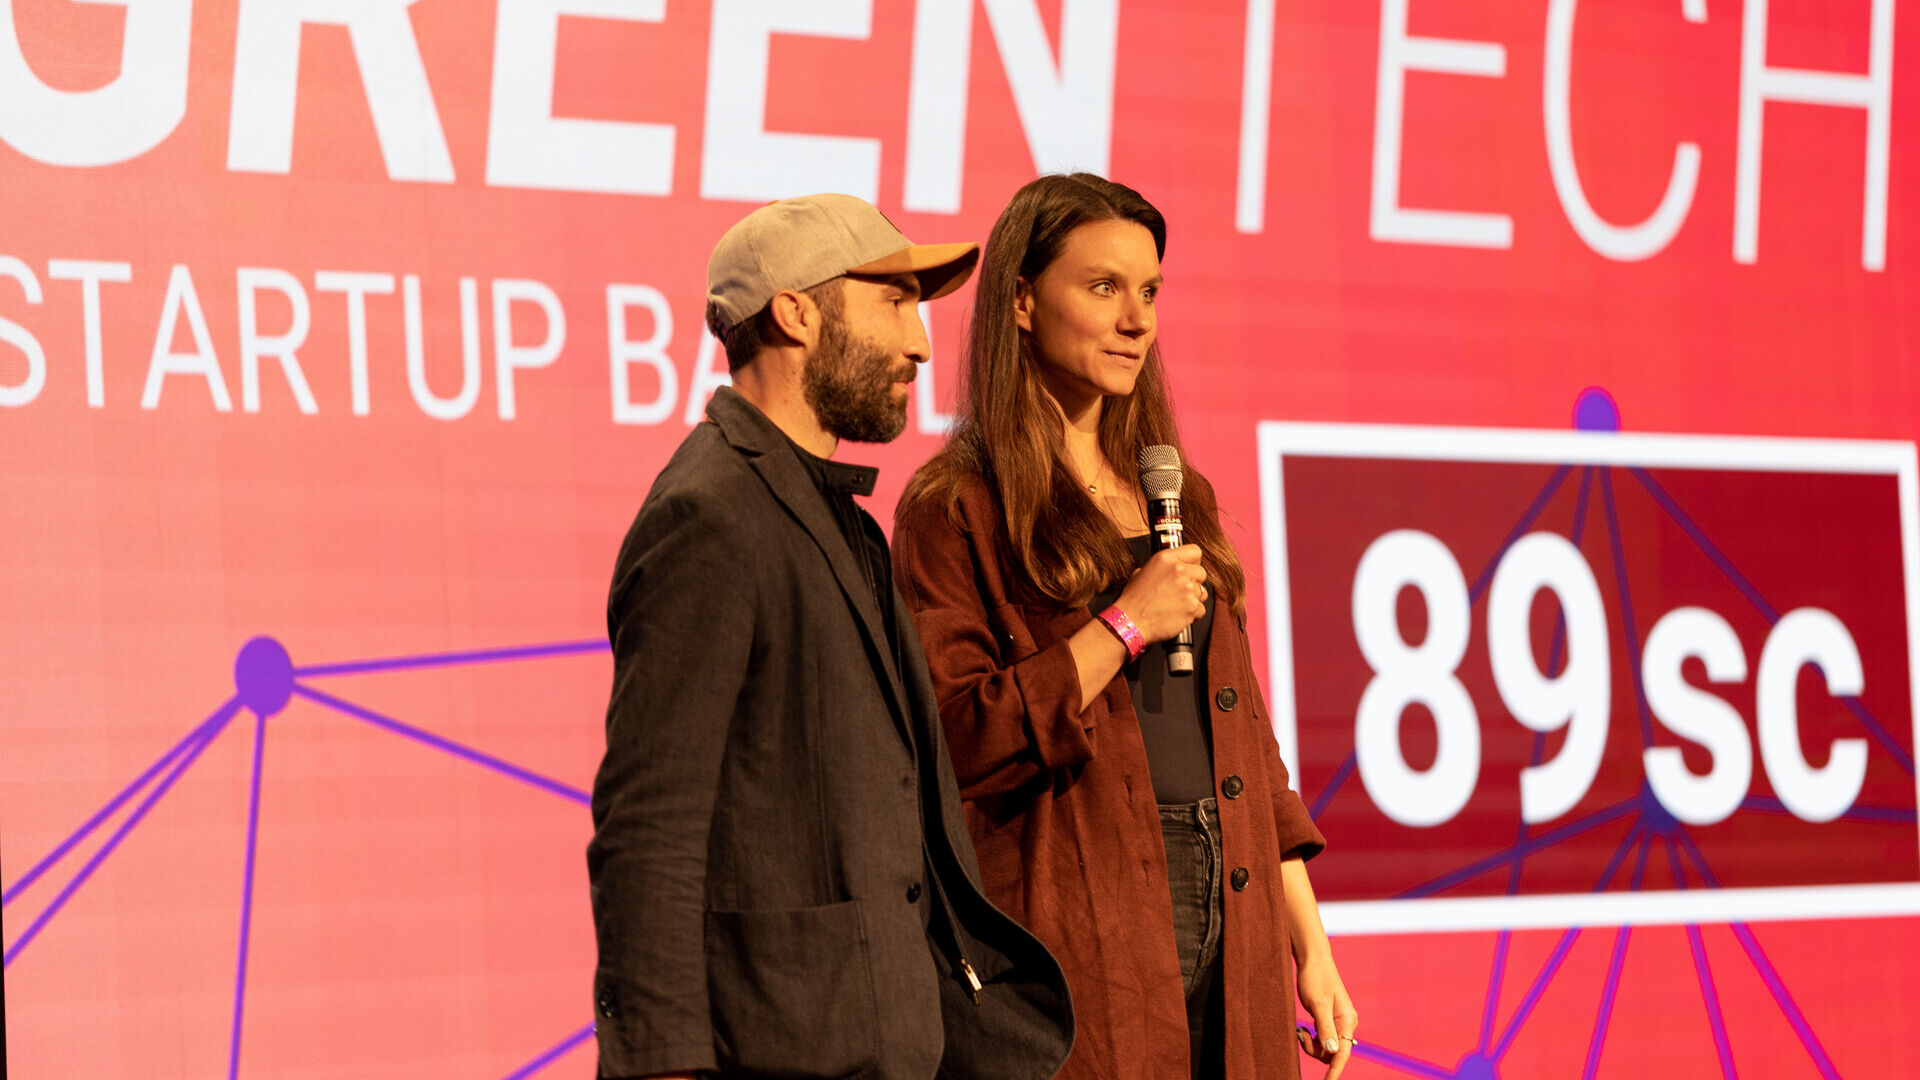 Swiss Digital Days: 2022월 27일 추크(Zug)의 Freiruum에서 열린 "Swiss Digital Days" XNUMX의 최종 행사: viboo의 승리로 "Greentech Startup Battle" 이니셔티브 시상식